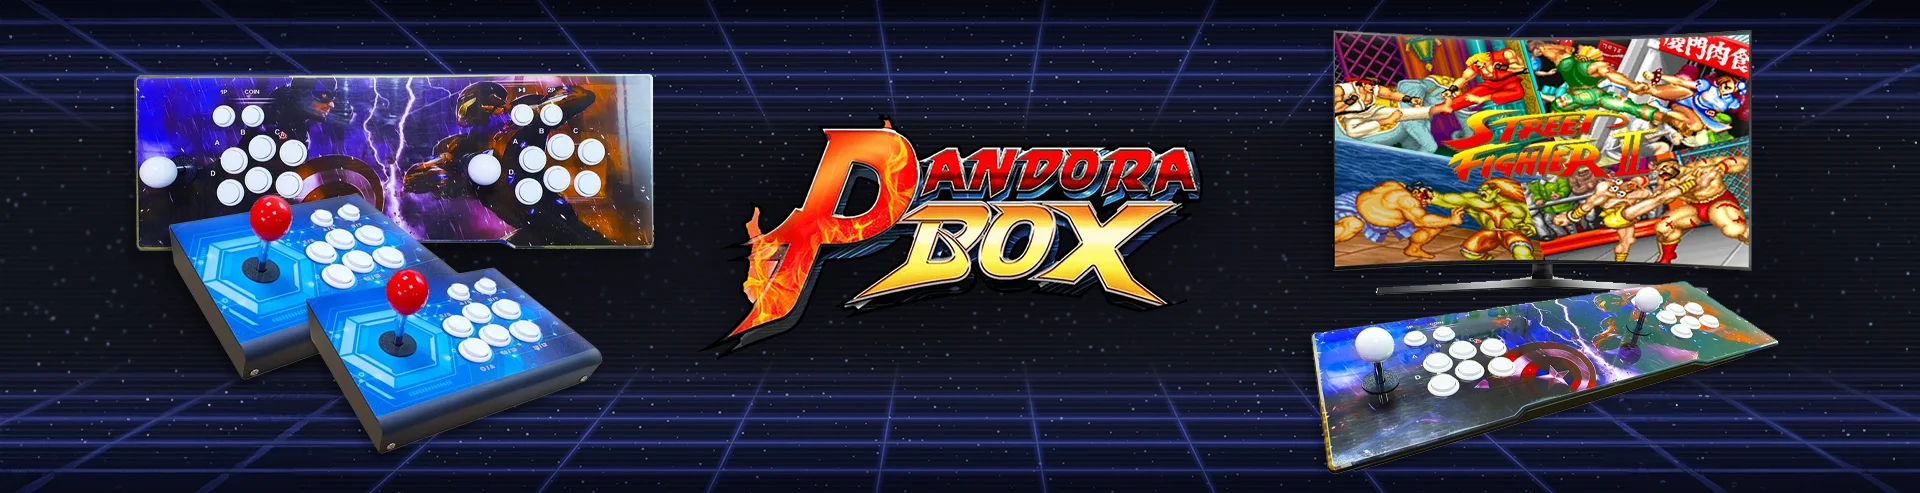 VM-Hero-Pandora Box-1920x493.webp